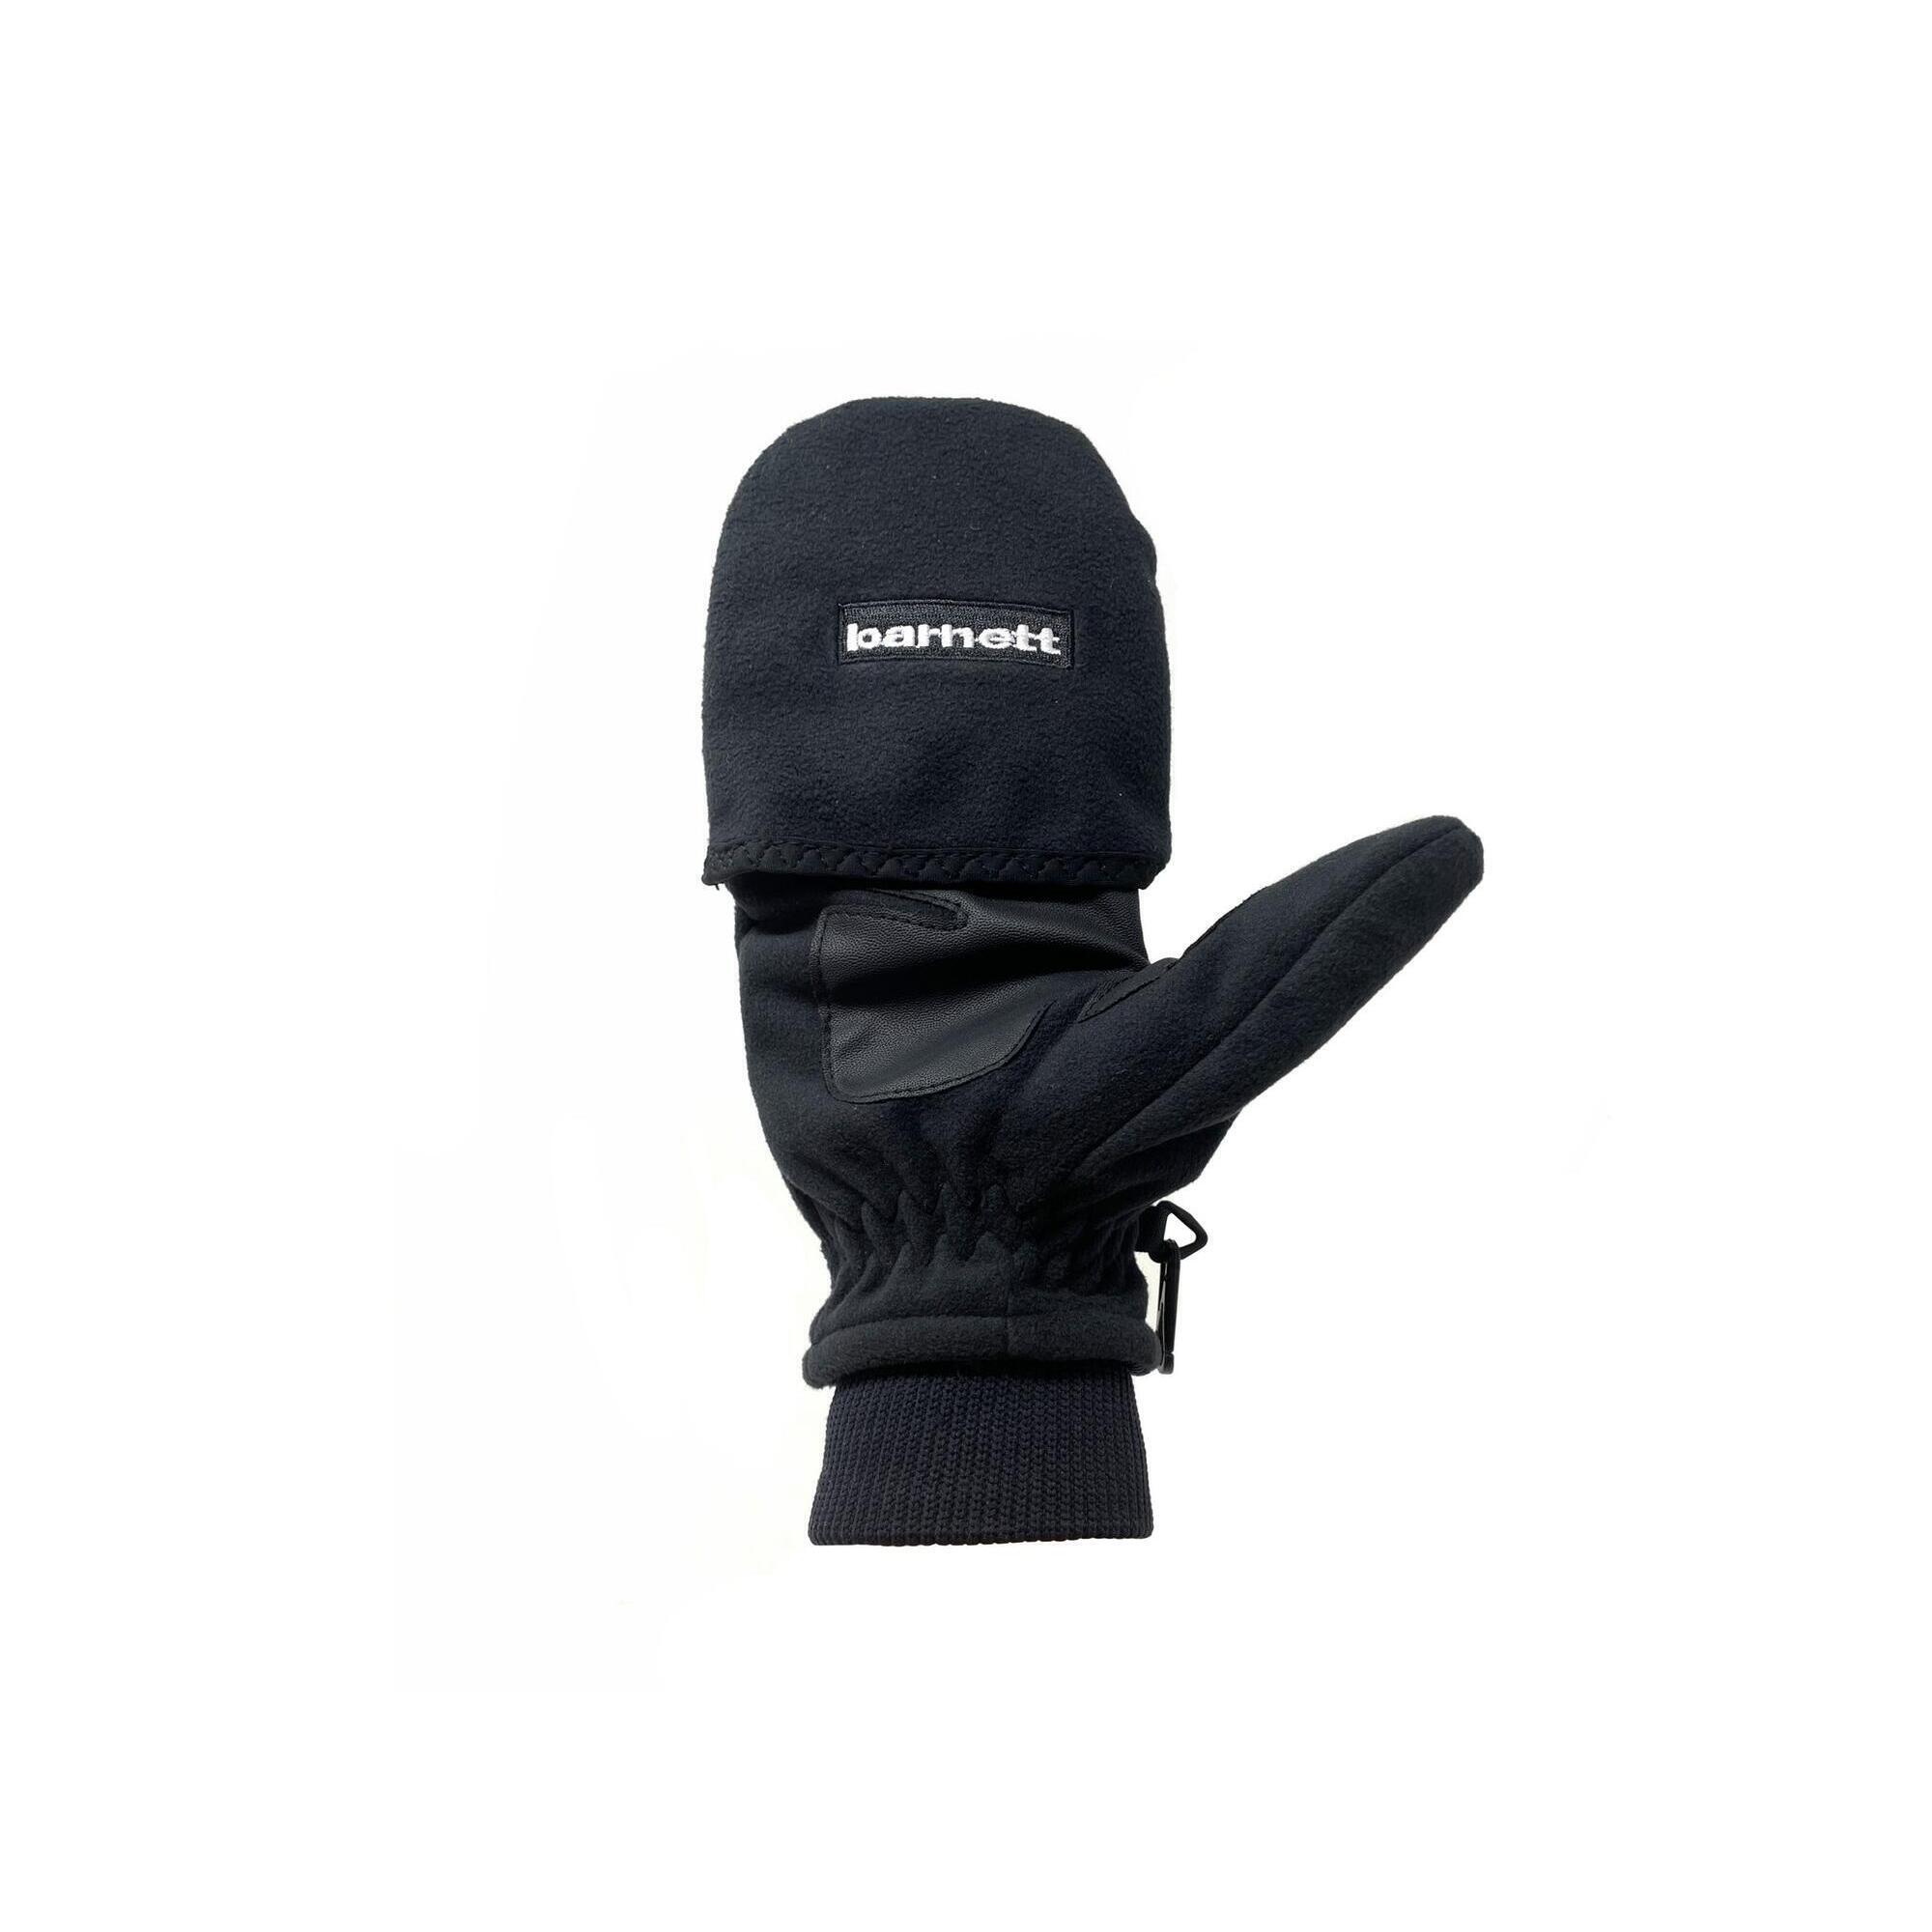  NBG-02 ski gloves 1/5